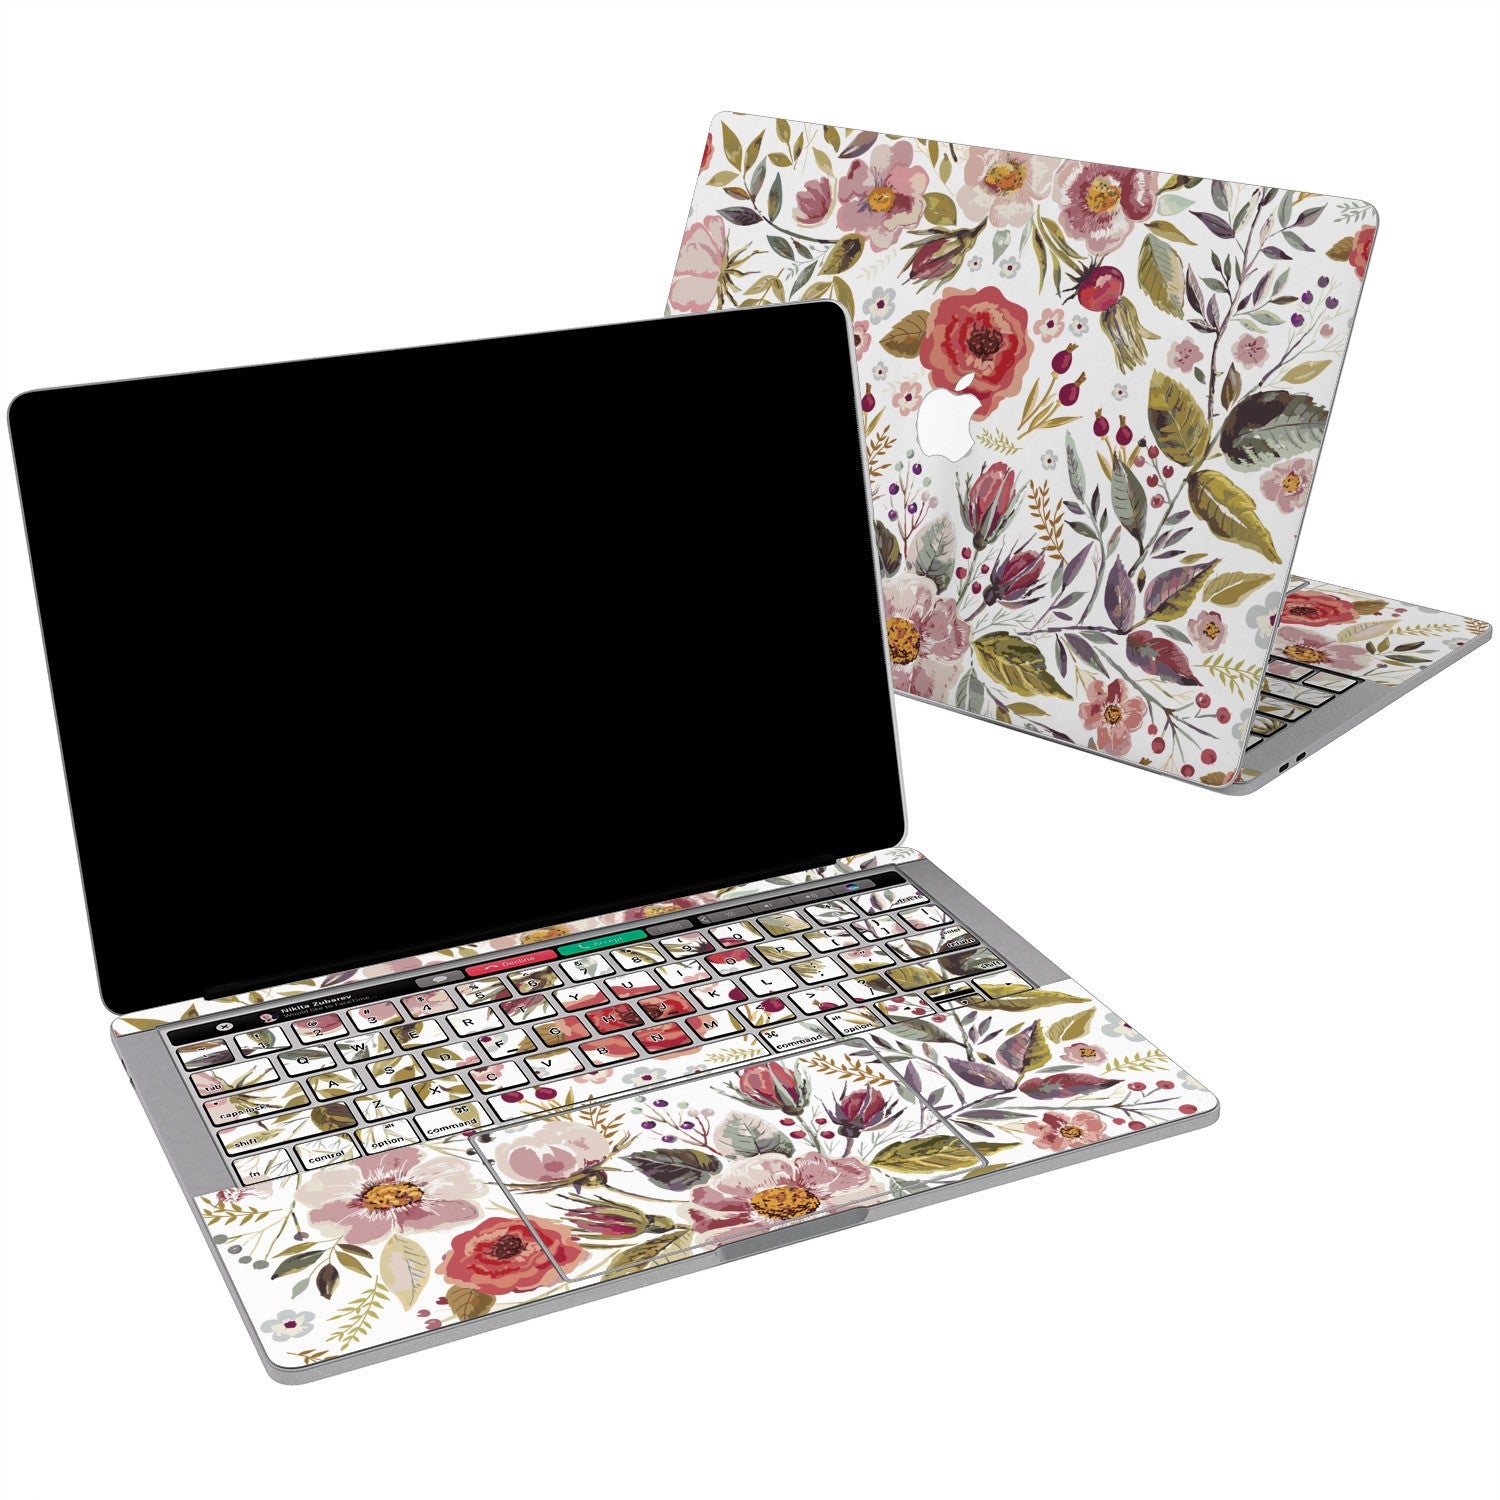 Lex Altern Wildflower Art Pattern Vinyl Skin for your Laptop Apple Macbook.